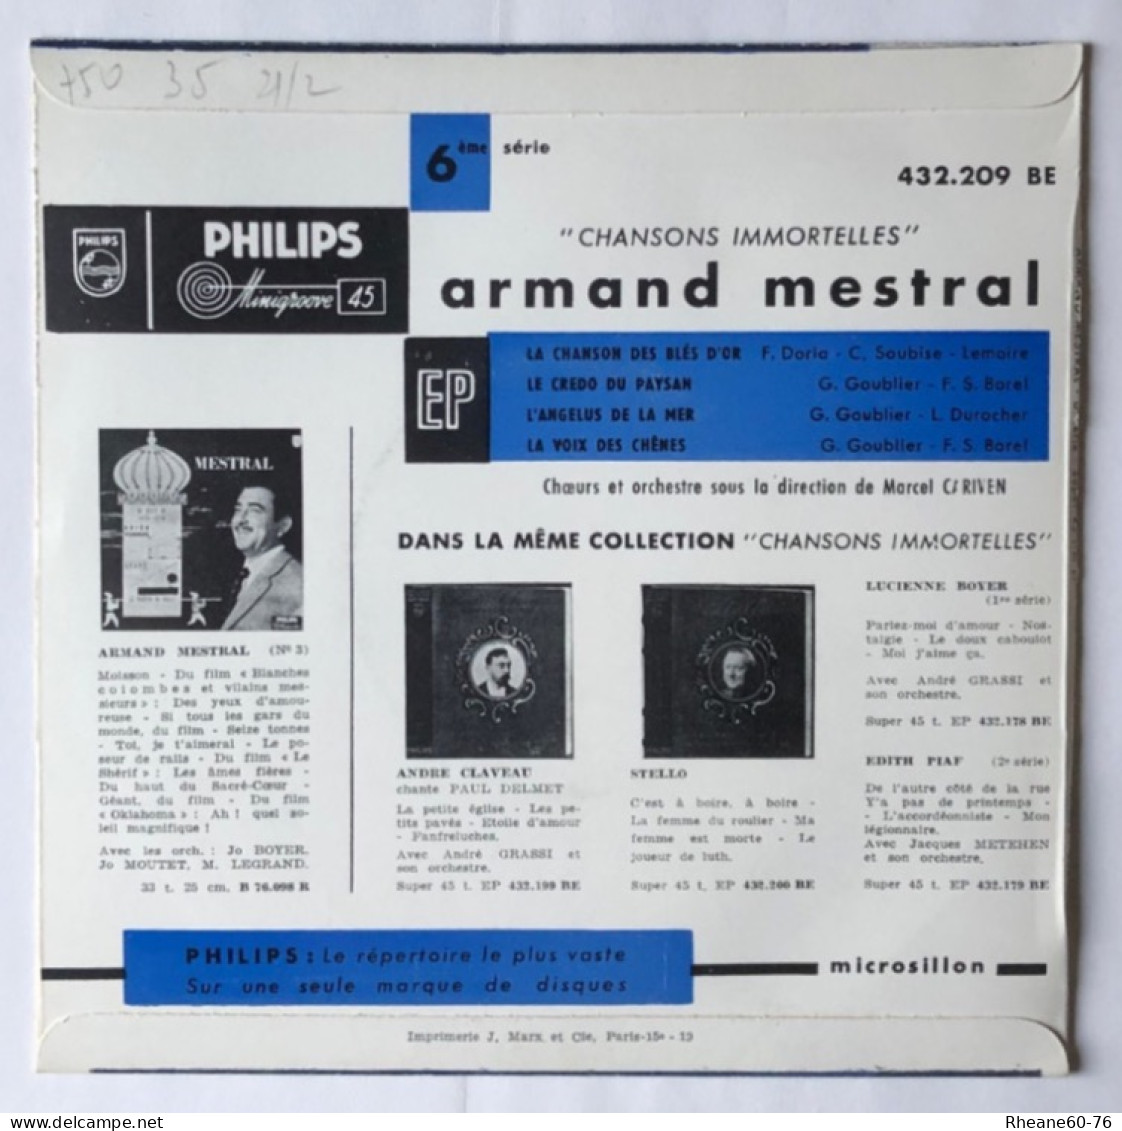 Philips 432.209 BE - 45T EP - Armand Mestral Orchestre Marcel Cariven - Microsillon Médium Haute Fidélité - Special Formats